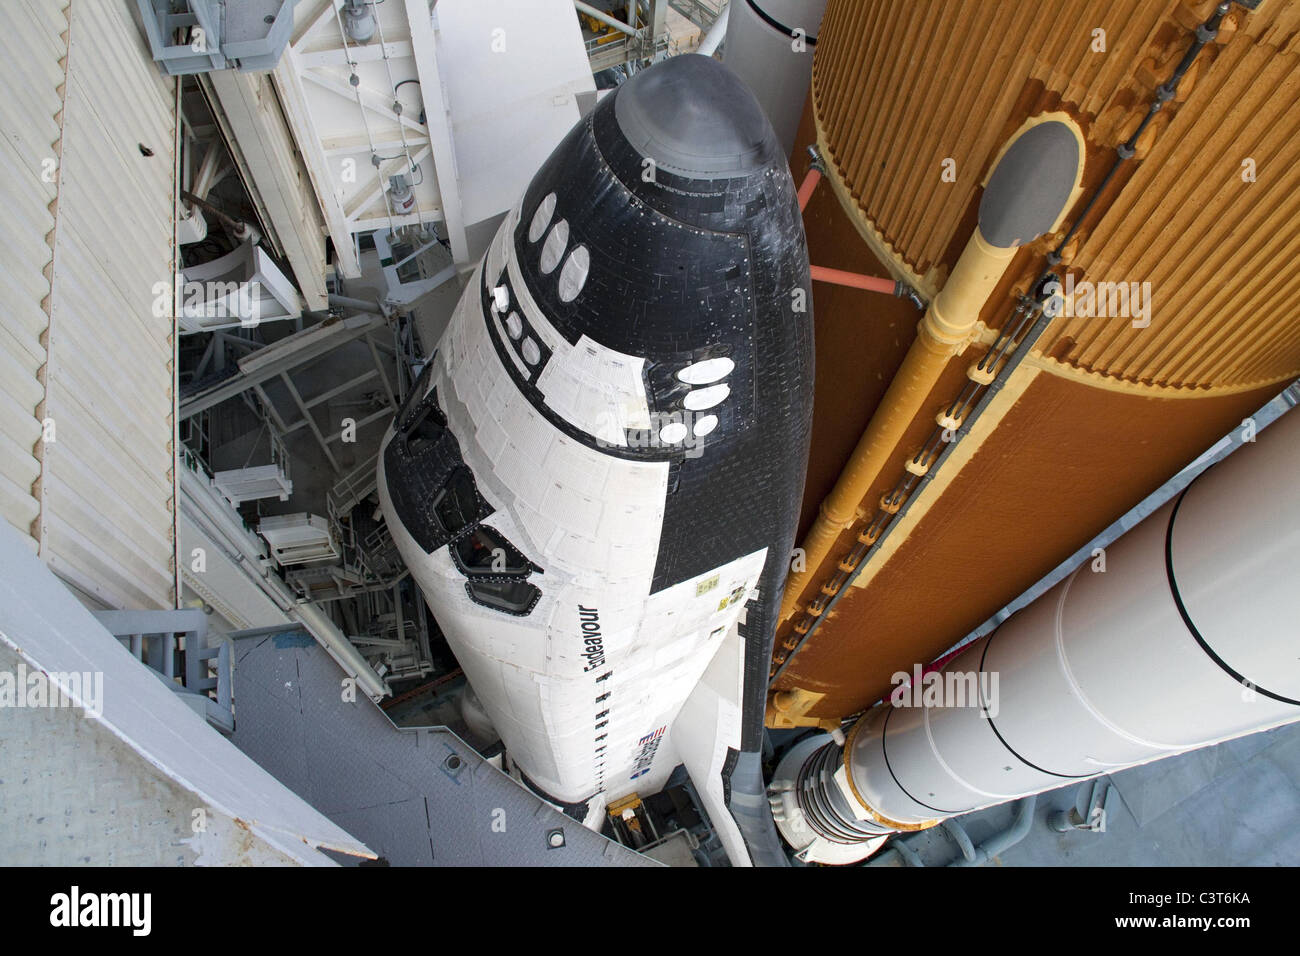 RSS il rollback del servizio di rotazione struttura (RSS) si allontana dalla navetta spaziale Endeavour sulla rampa di lancio 39A. La struttura fornisce protezione contro le intemperie e accesso alla navetta mentre si attende sollevare sul pad. RSS "rollback,' come si chiama, cominciò a 11:44 a.m. EDT 15 maggio ed è stato completato al 12:24 p.m. Credito di immagine: la NASA/Jack Pfaller Maggio 15, 2011 Foto Stock